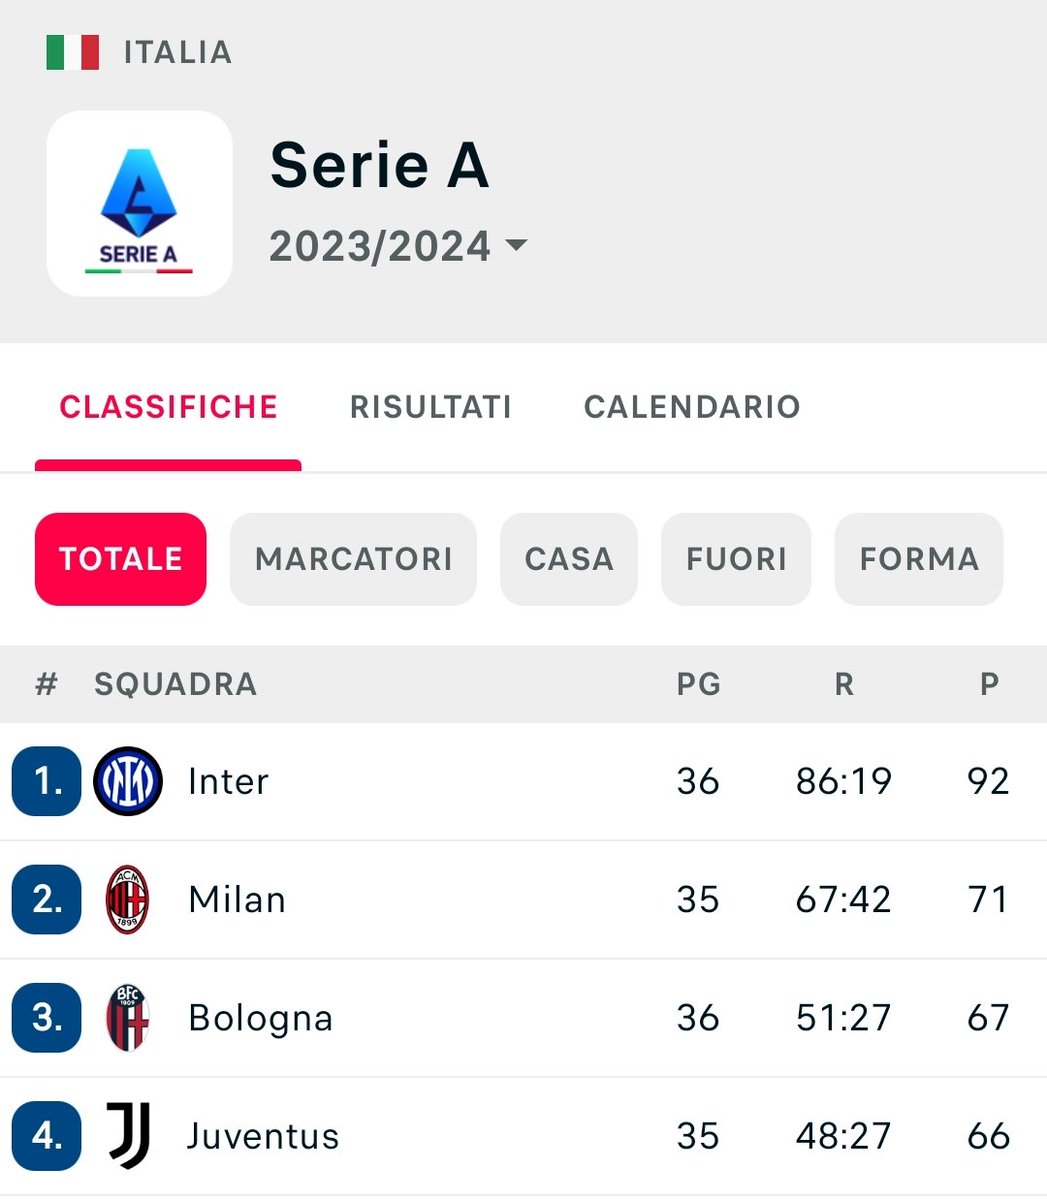 La rosa più cara della #SerieA e l'allenatore più pagato della #SerieA, superati dal #Bologna.

SEMPLICEMENTE #JUVE.